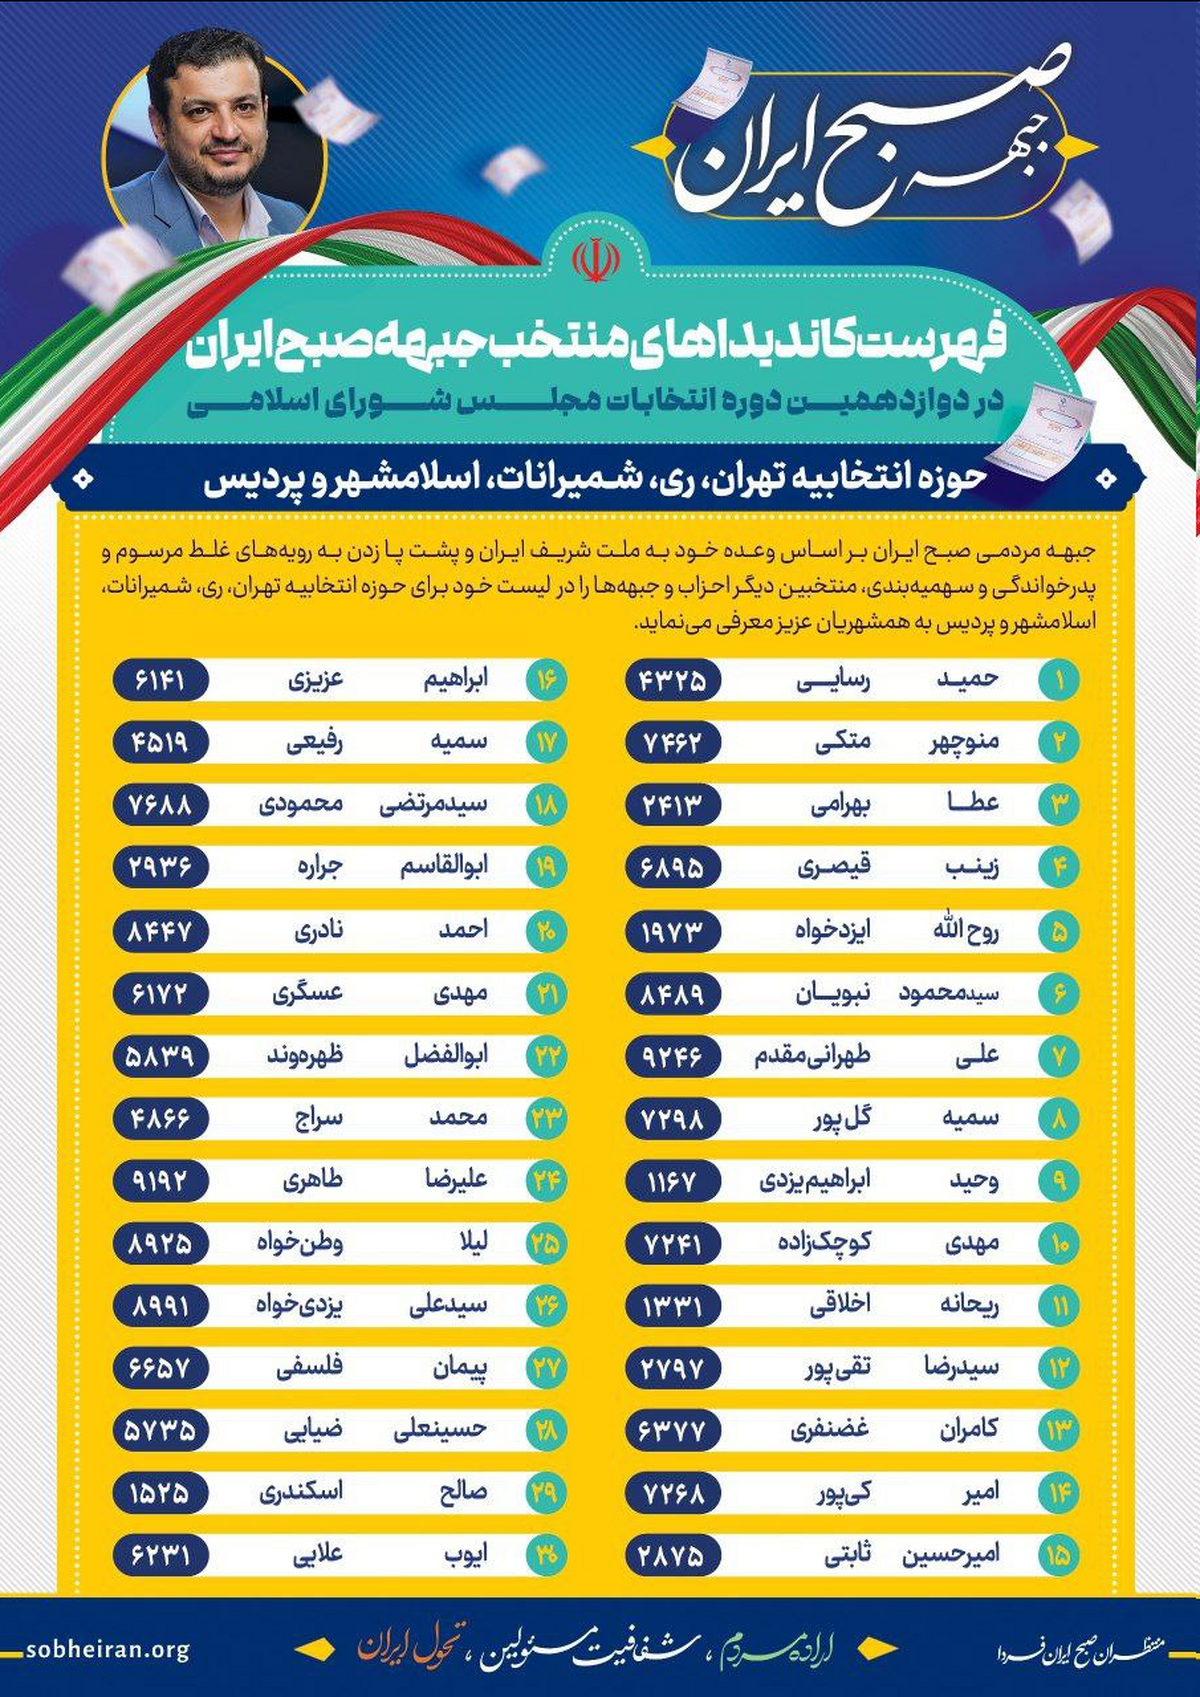 فهرست کاندیداهای منتخب جبهه «صبح ایران» منتشر شد